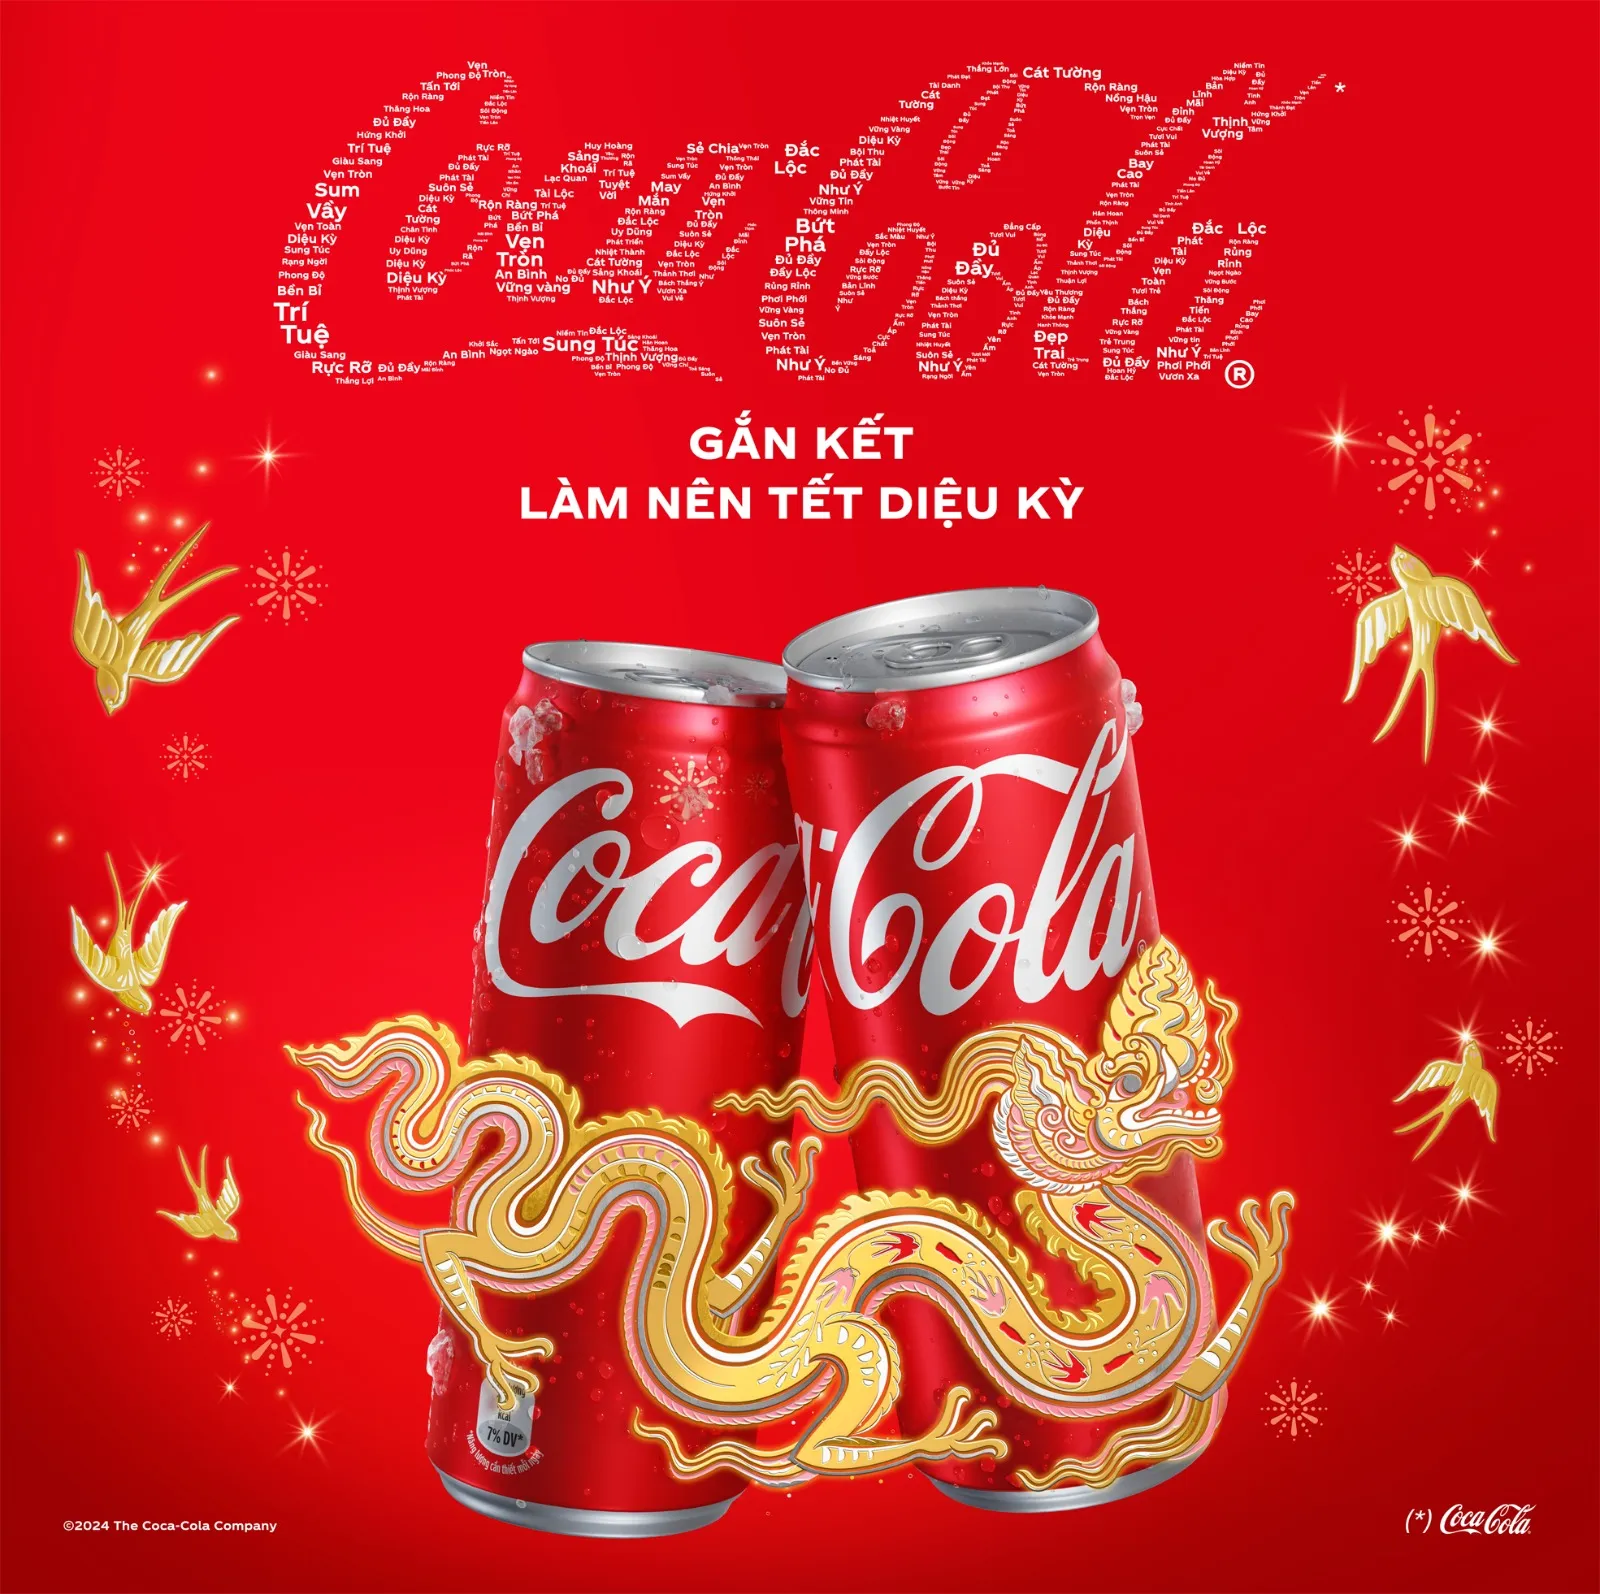 Biểu tượng Rồng trong chiến dịch Coca-cola (Ảnh: Coca-cola)